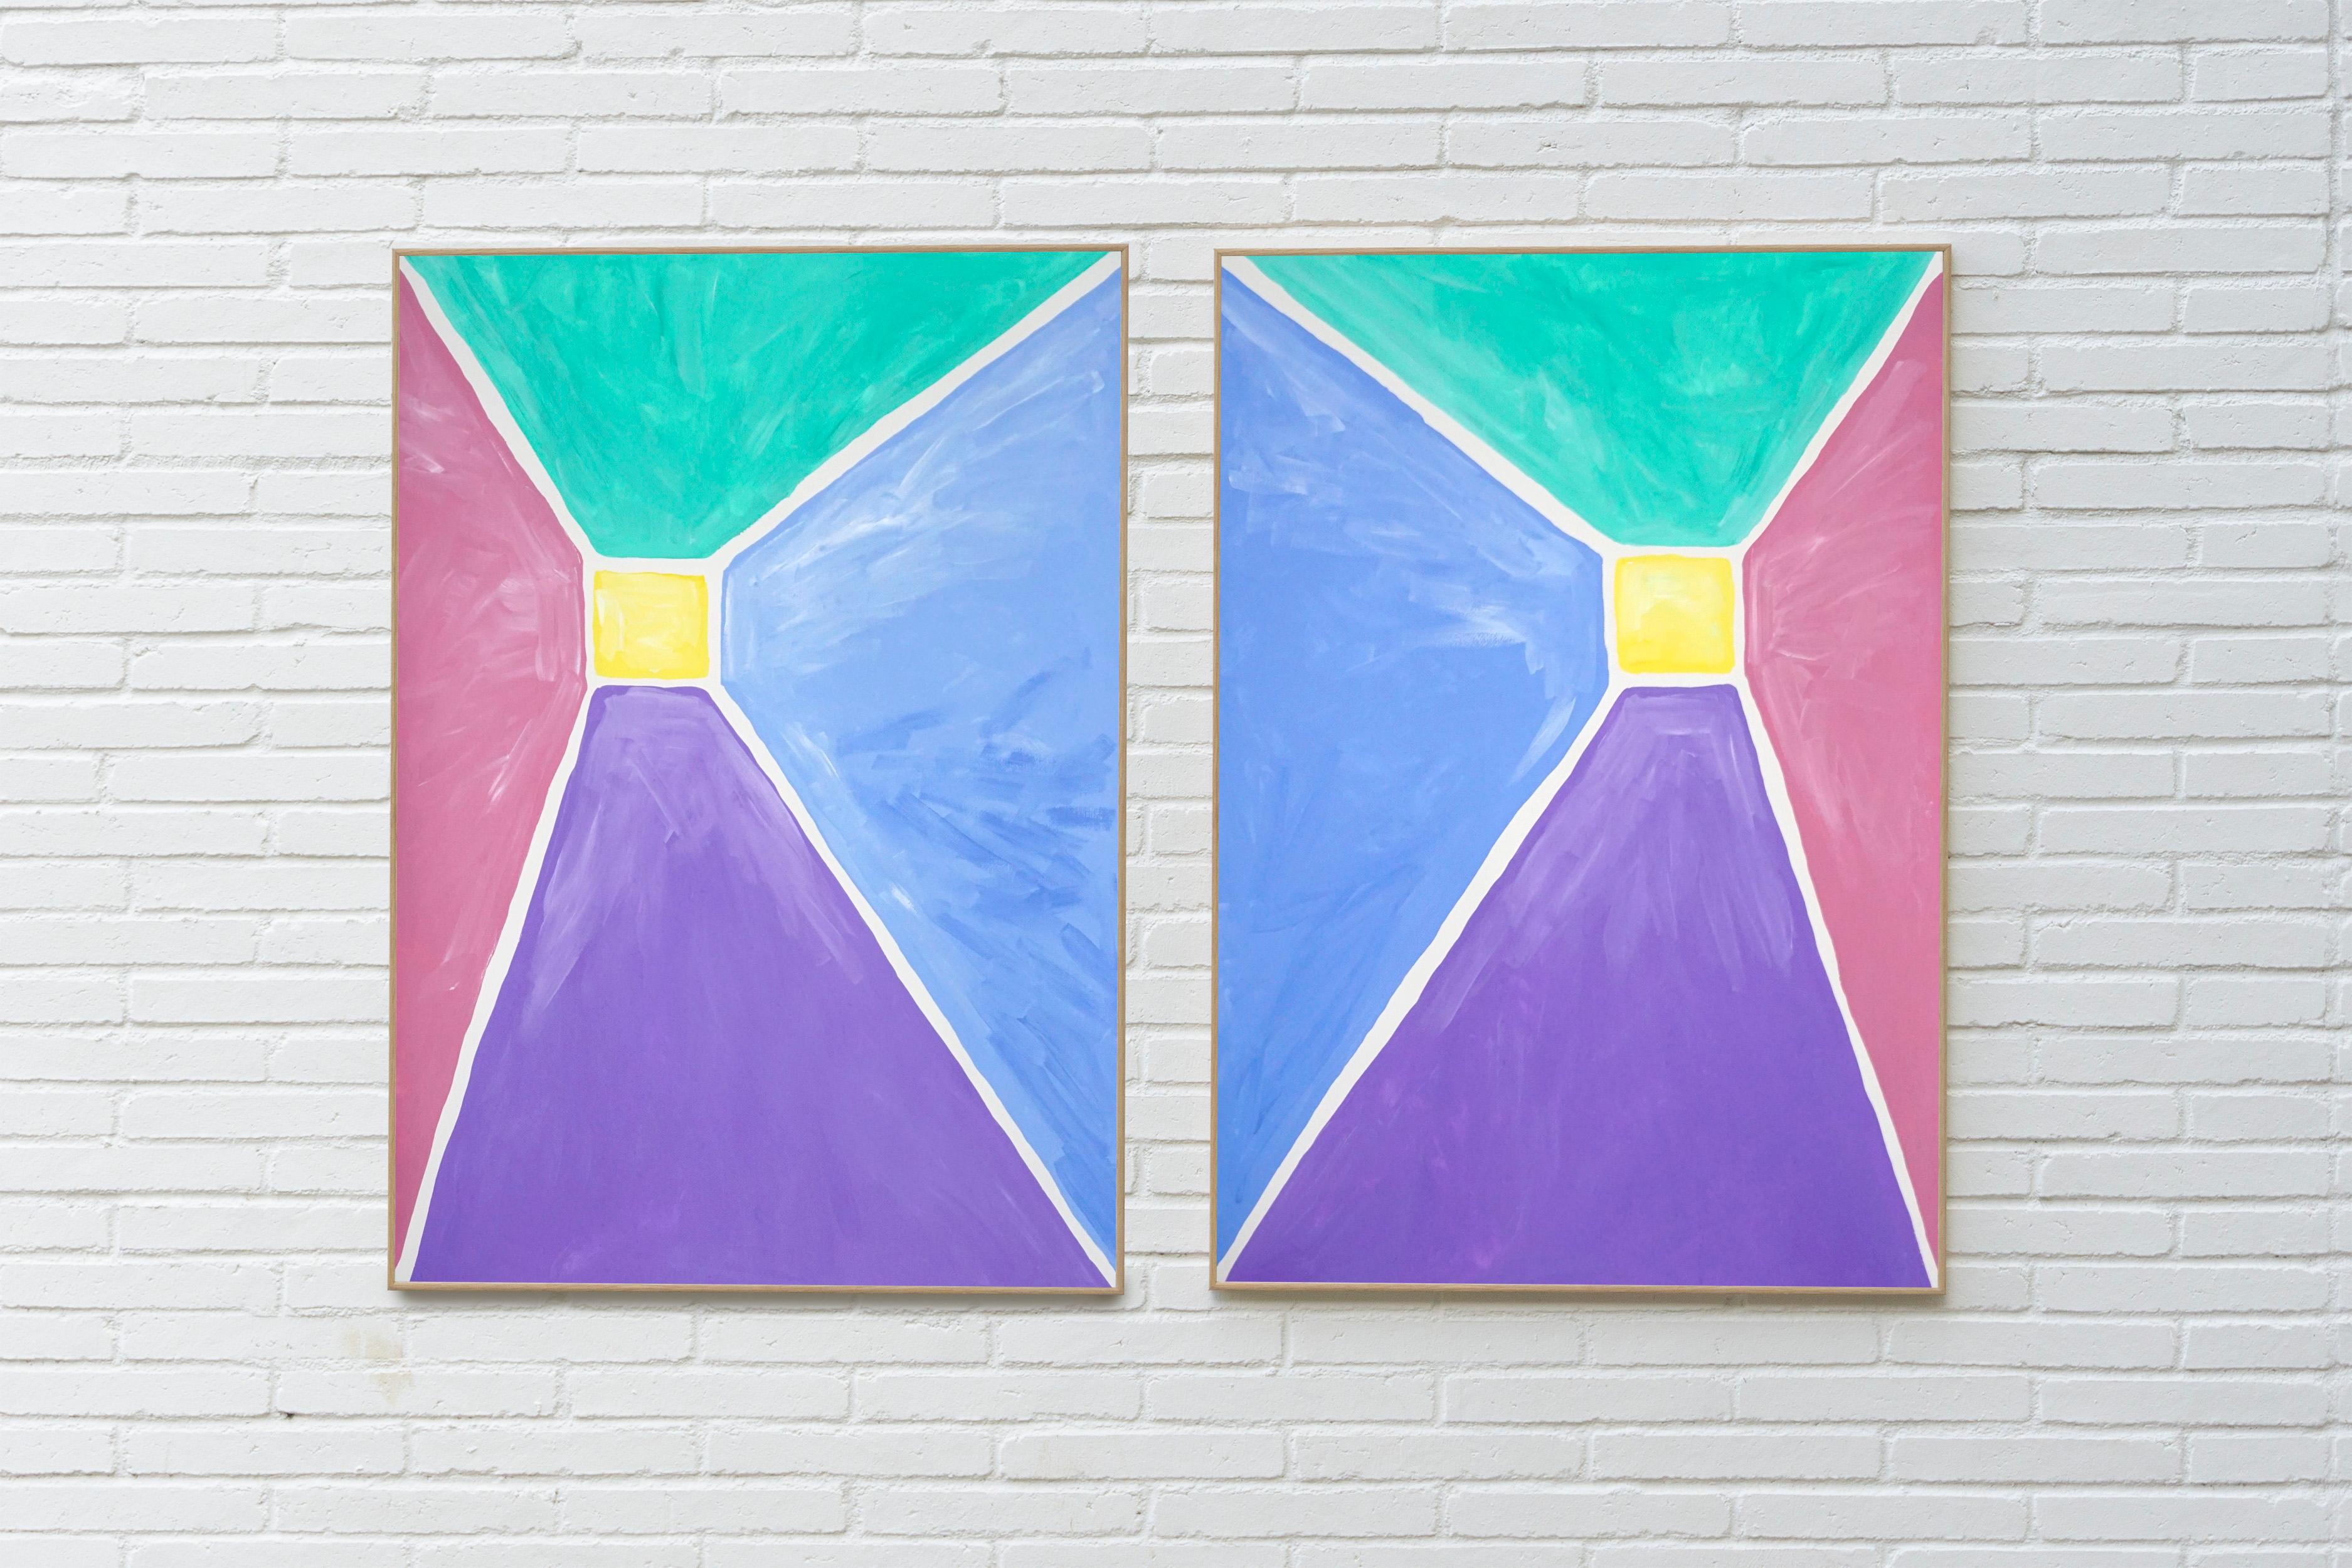 Diptyque pyramidal aux tons pastel, peinture acrylique sur papier, géométrique abstraite  - Op Art Painting par Natalia Roman